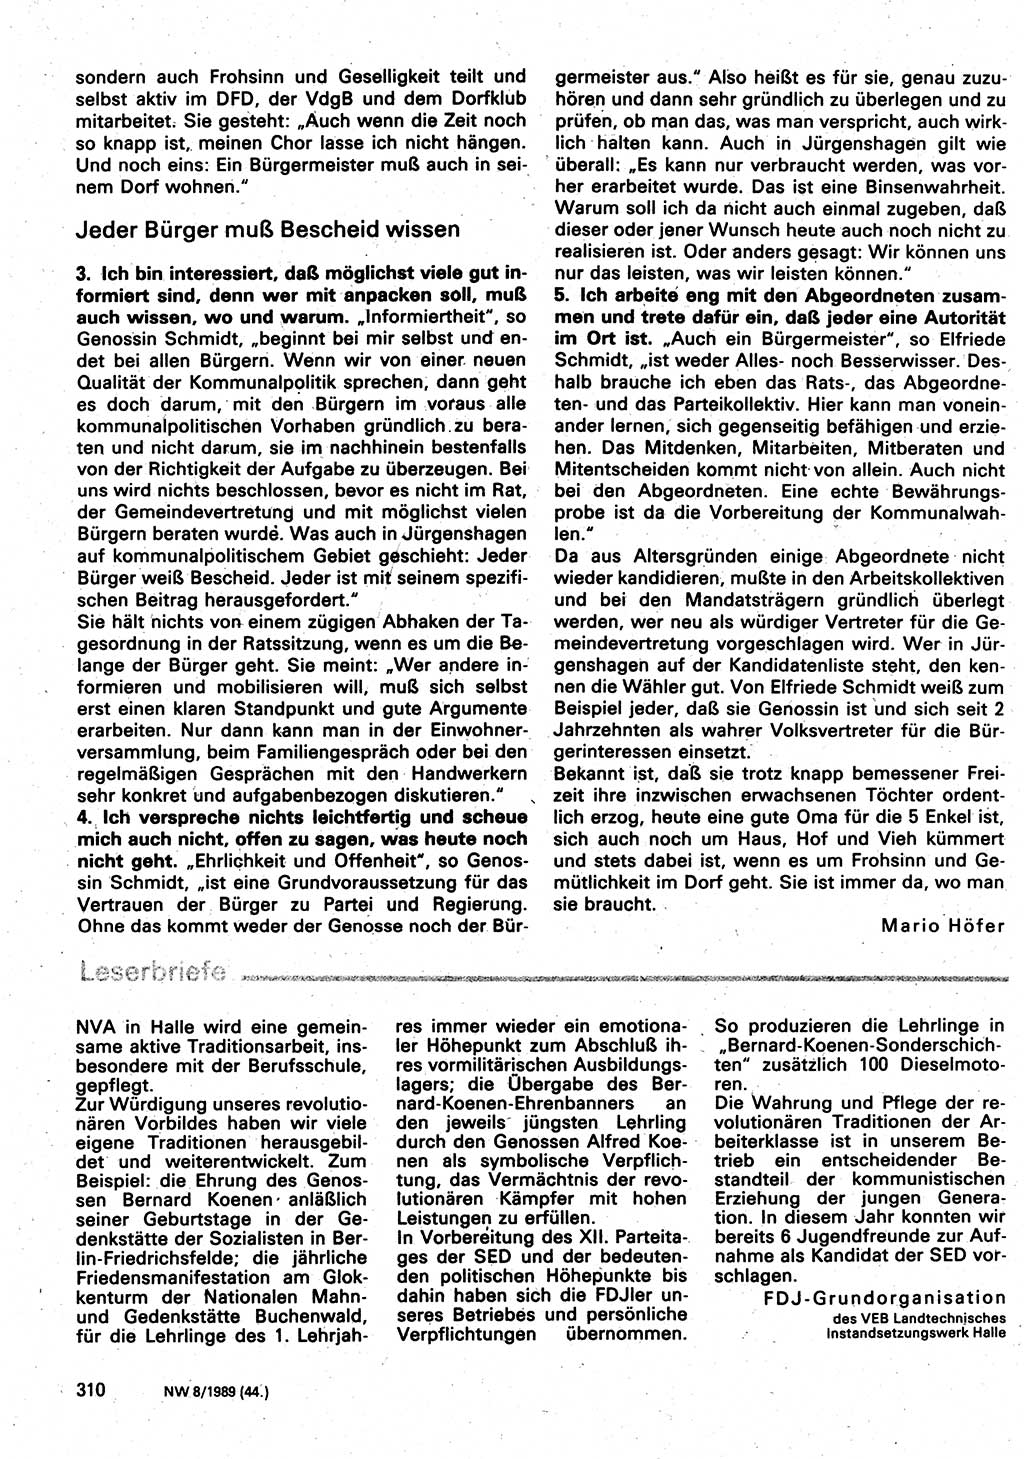 Neuer Weg (NW), Organ des Zentralkomitees (ZK) der SED (Sozialistische Einheitspartei Deutschlands) für Fragen des Parteilebens, 44. Jahrgang [Deutsche Demokratische Republik (DDR)] 1989, Seite 310 (NW ZK SED DDR 1989, S. 310)